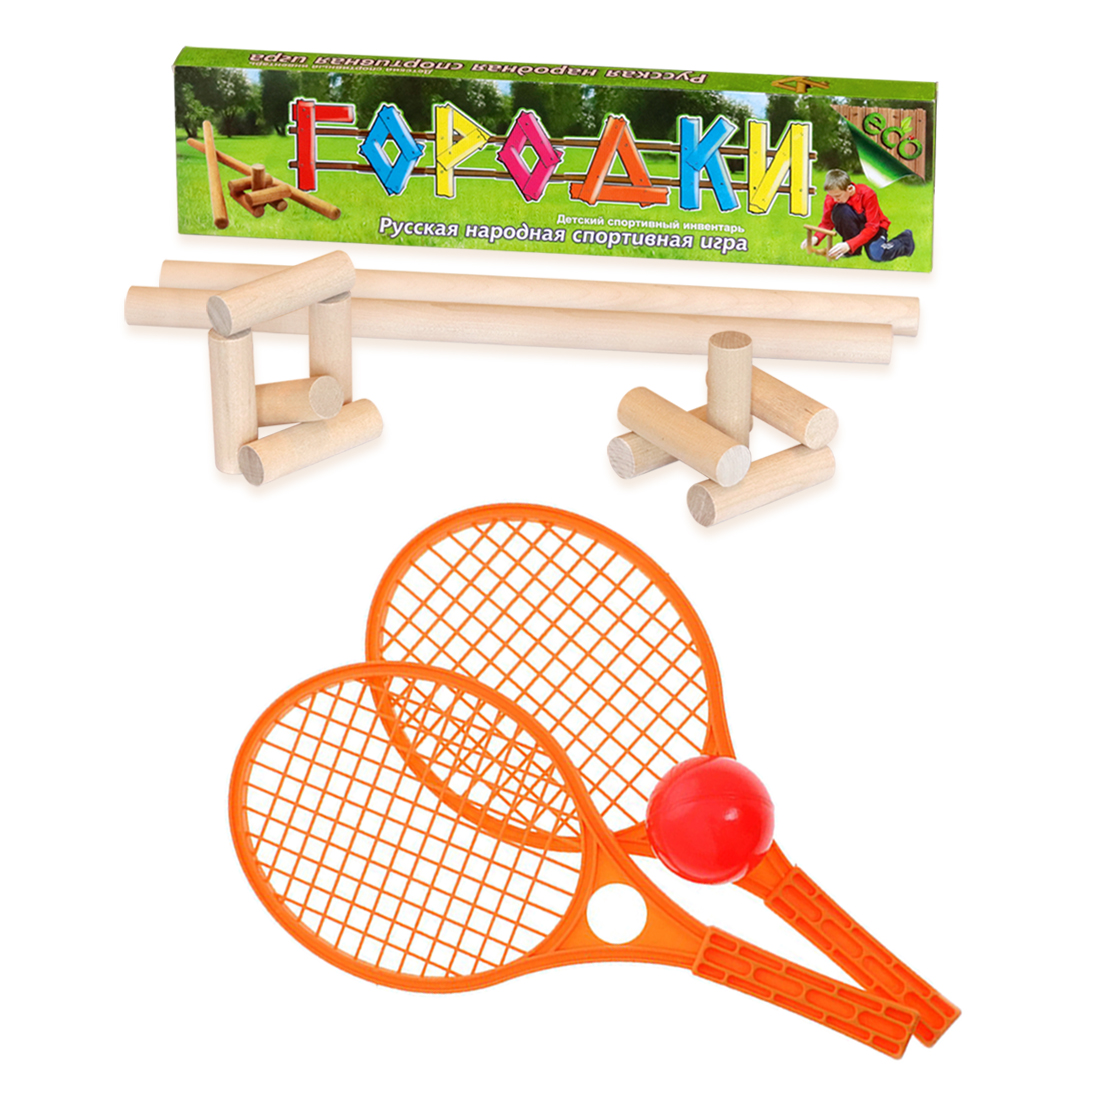 Городки ТЕБЕ ИГРУШКА + Набор для тенниса оранжевый мячики для настольного тенниса donic jade 40 6 штук 618378 оранжевый